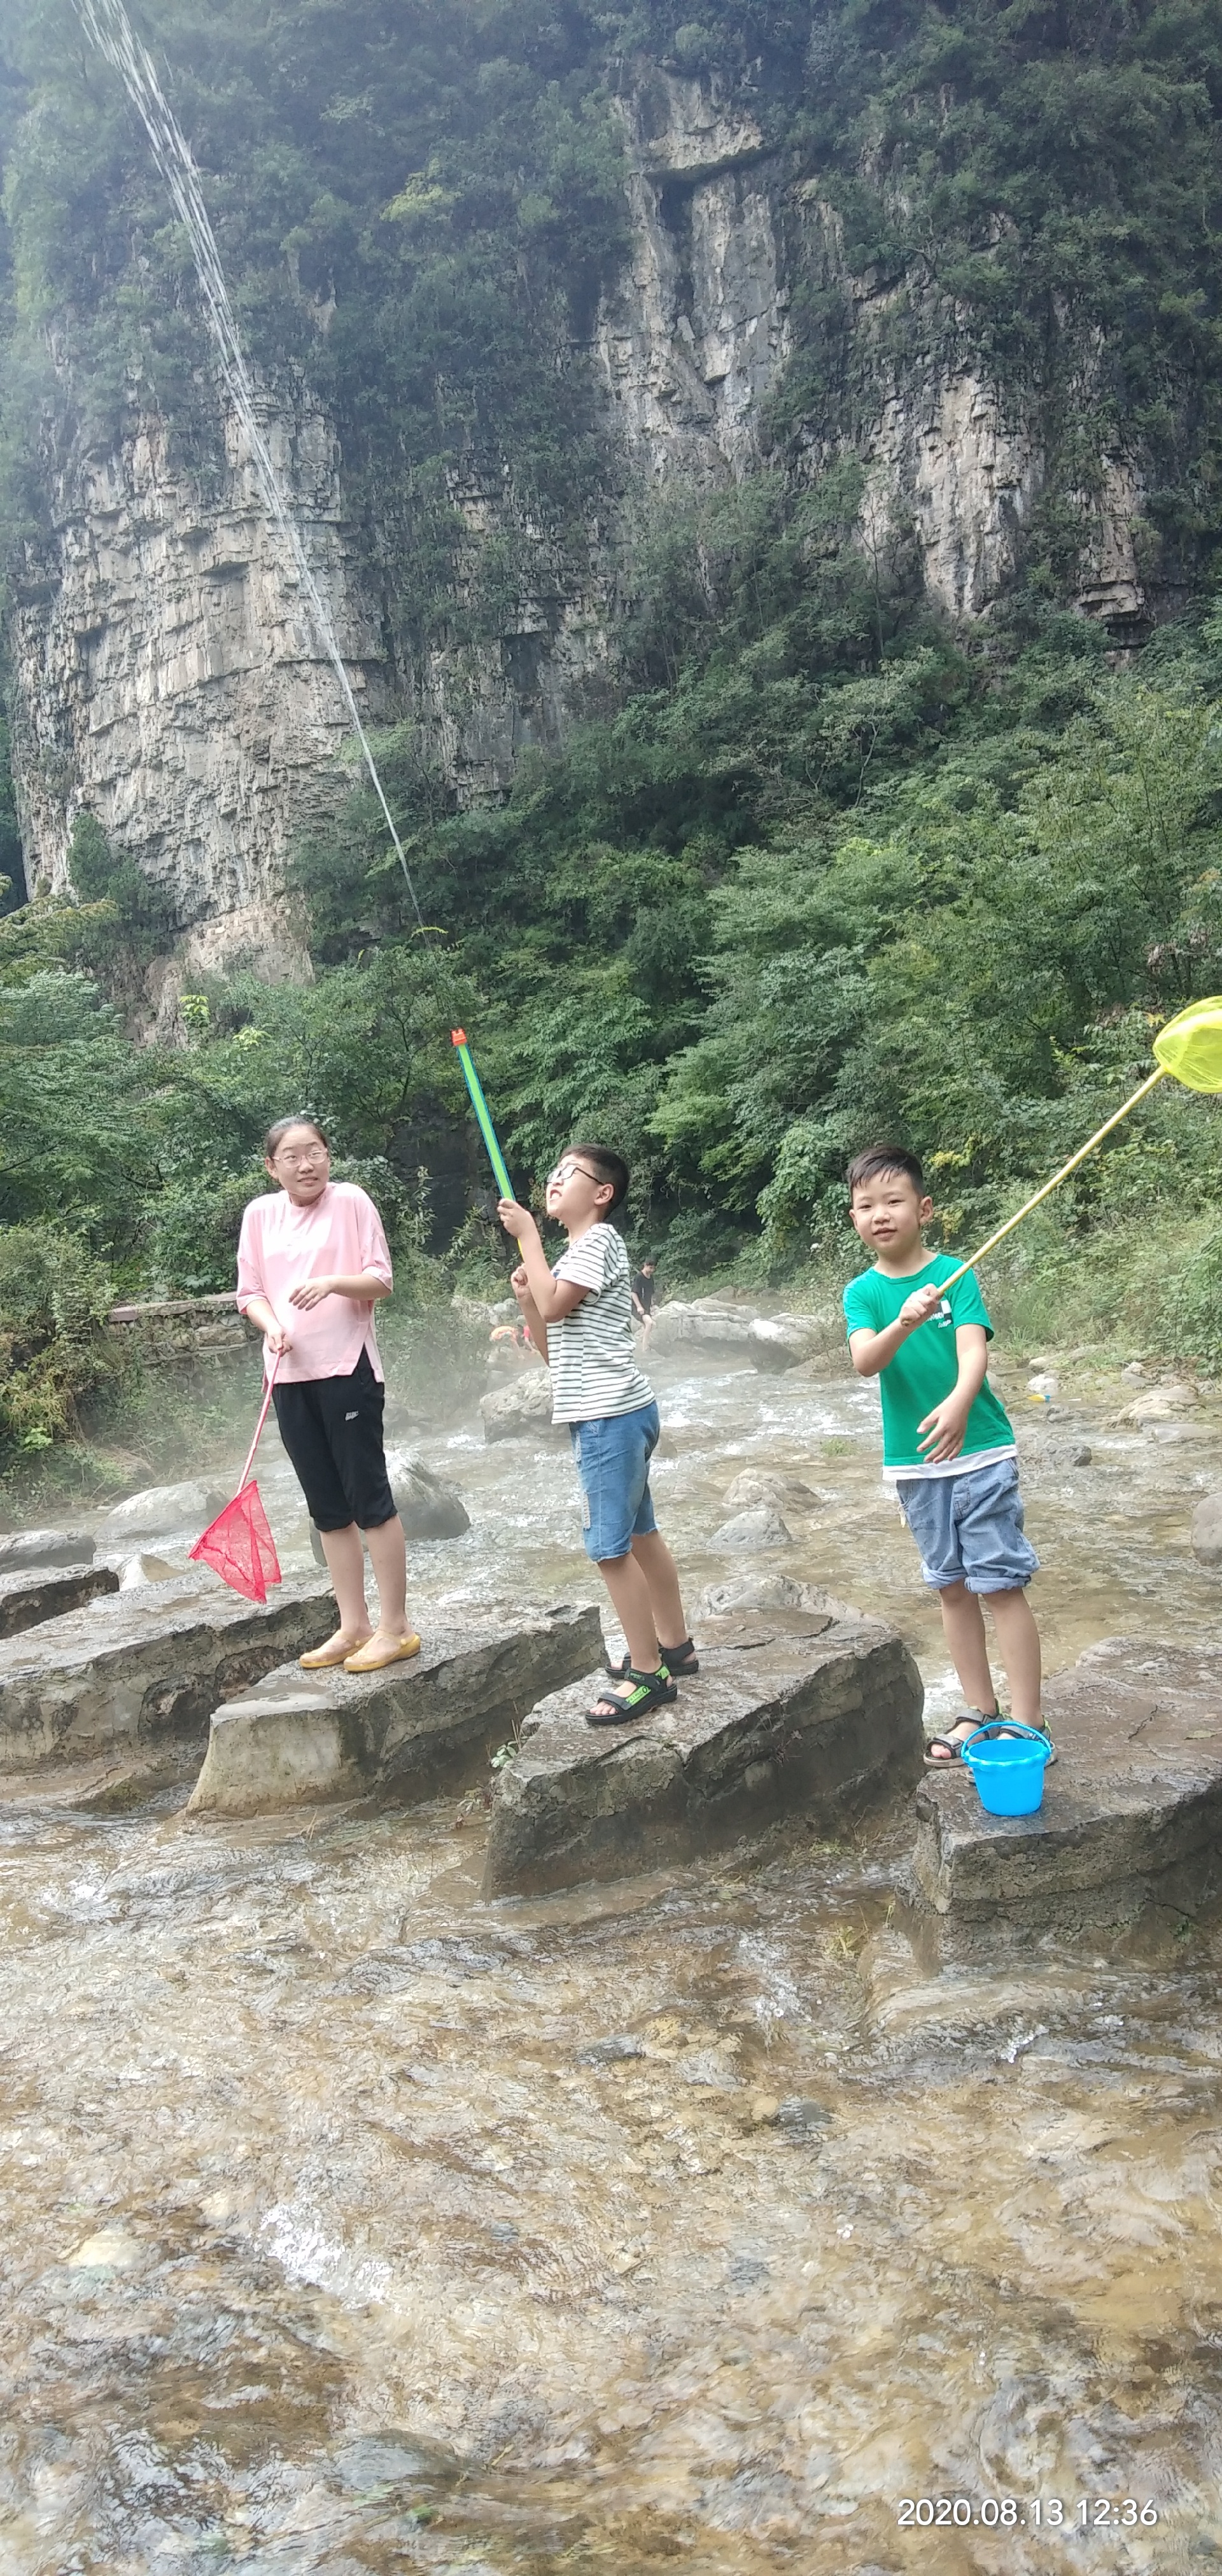 峰林峡-纳凉避暑胜地。做的索道也很刺激。值得一去